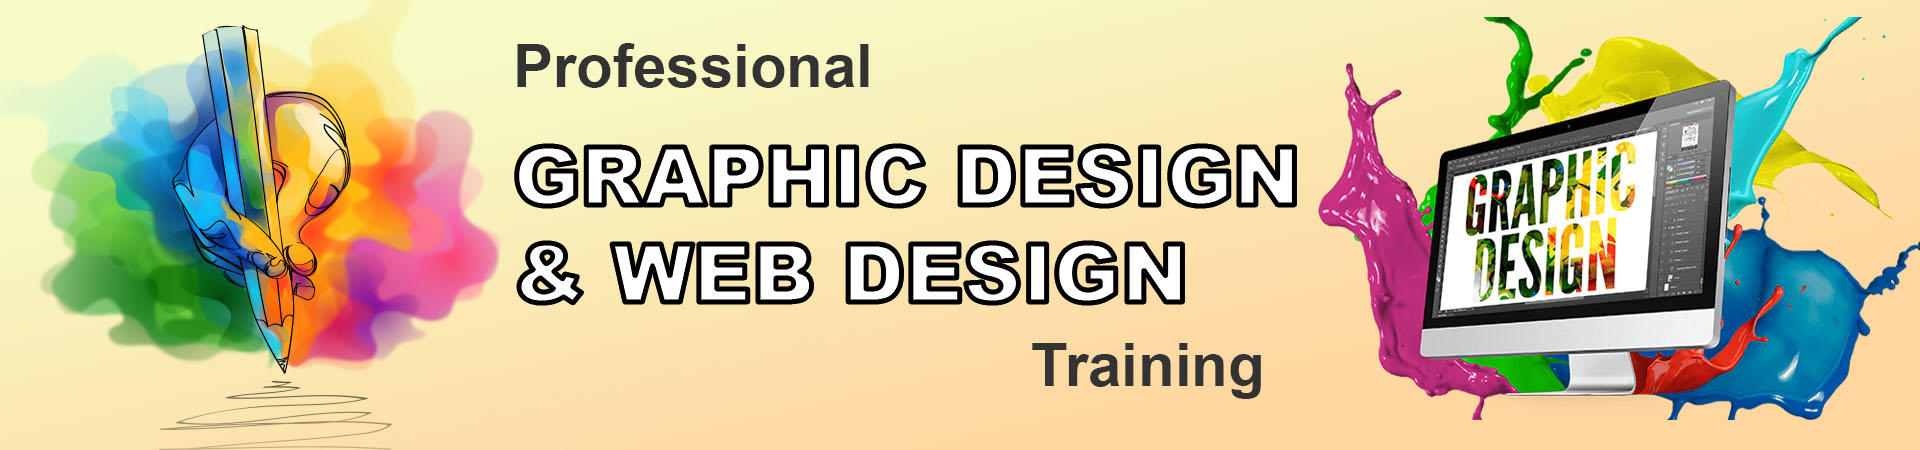 web design and Graphic course in Vadodara | web design and Graphic Classes in Vadodara | web design and Graphic Training in Vadodara | web design and Graphic Course Classes In Vadodara